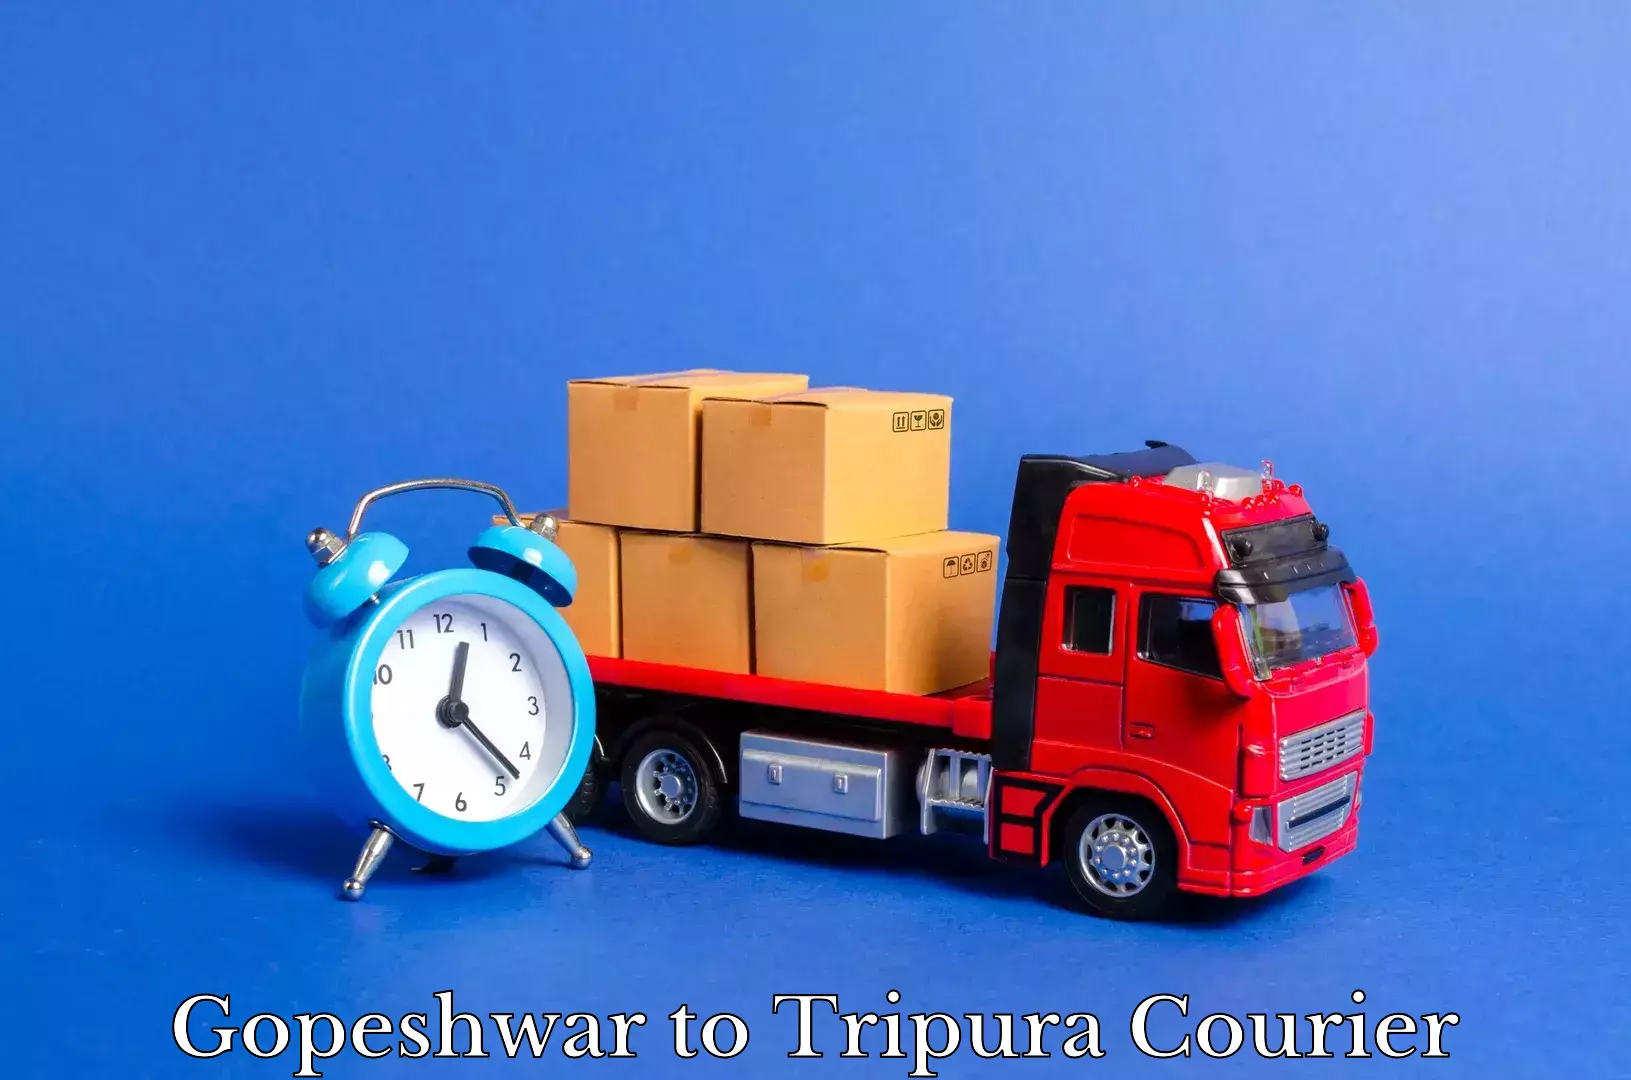 Furniture transport service Gopeshwar to Khowai